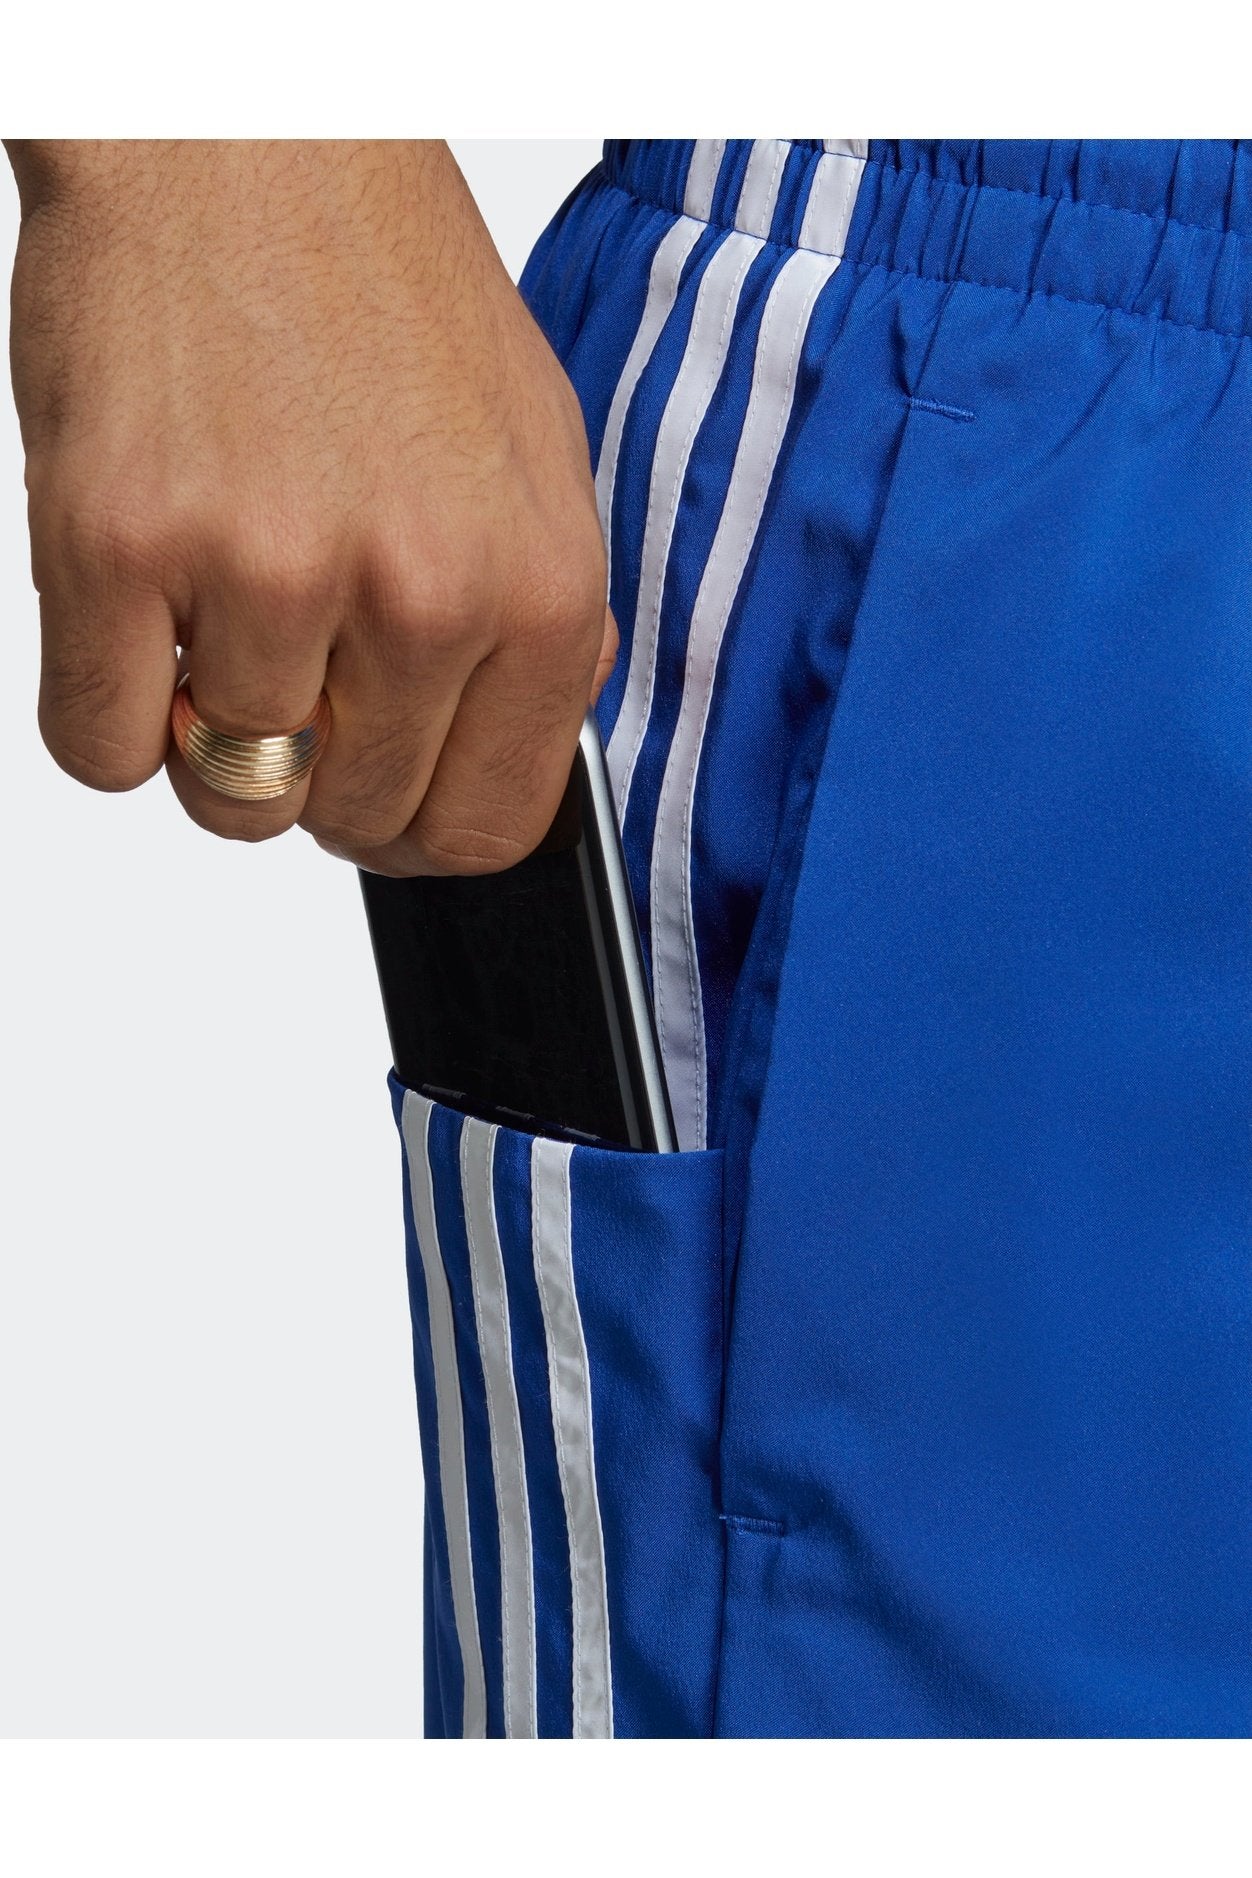 מכנסיים קצרים לגברים AEROREADY ESSENTIALS CHELSEA 3-STRIPES בצבע כחול ולבן